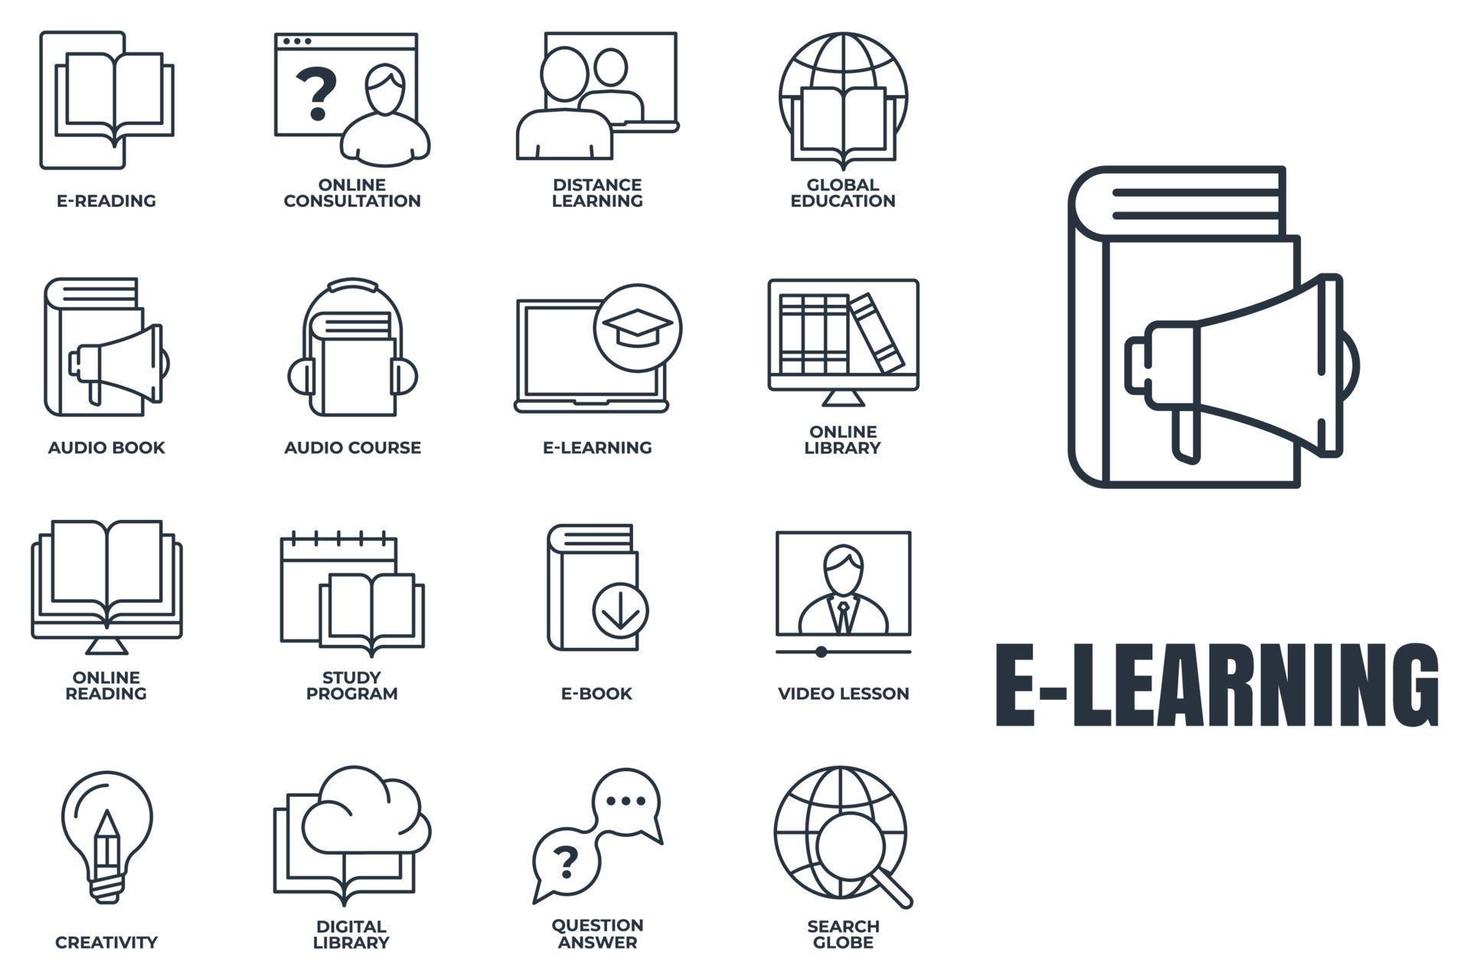 conjunto de e-learning, ilustración de vector de logotipo de icono de educación en línea. educación global, programa de estudio, globo de búsqueda, aprendizaje a distancia y más plantilla de símbolo de paquete para la colección de diseño gráfico y web